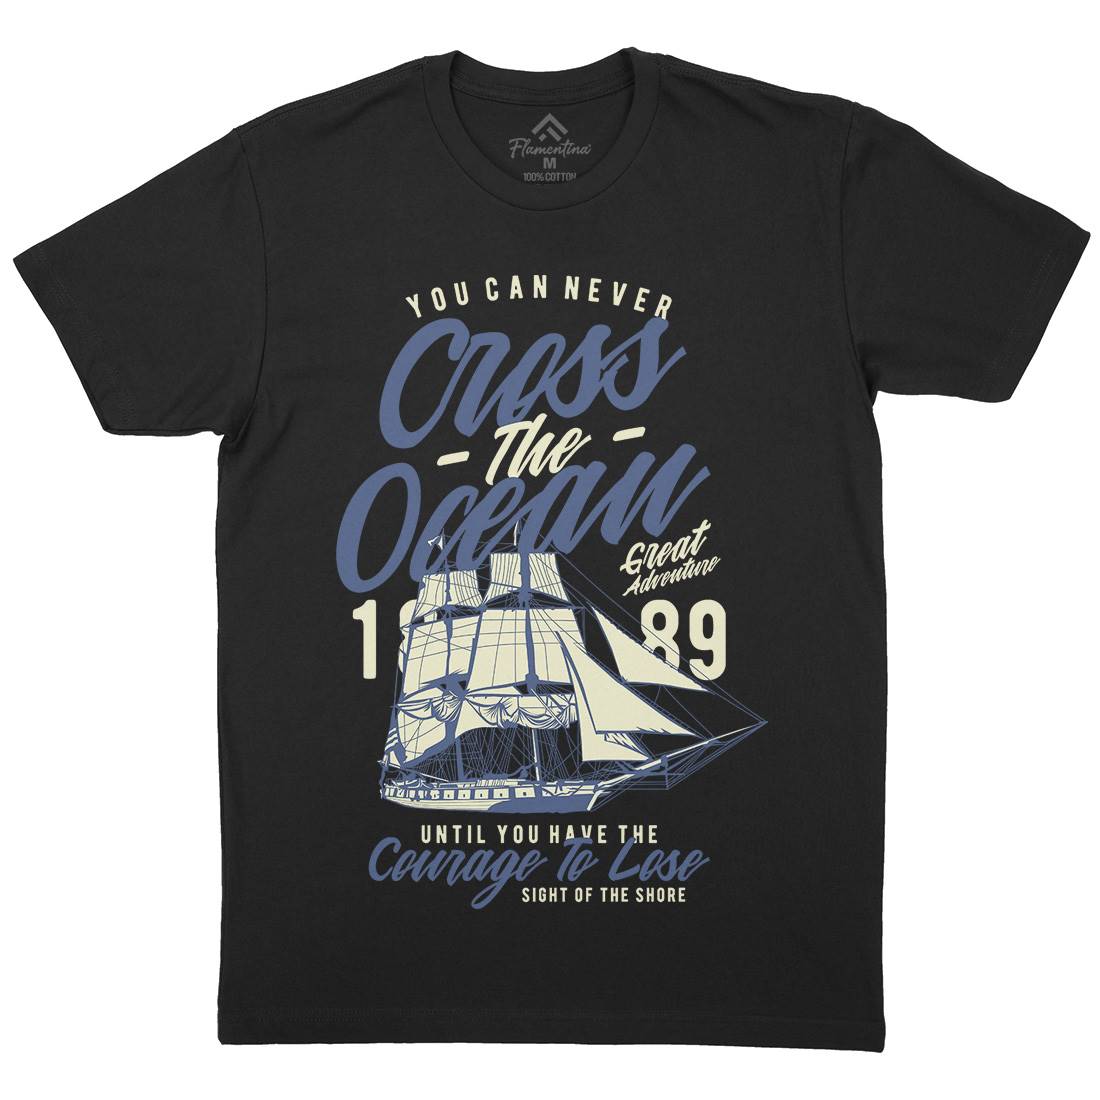 Cross The Ocean Mens Organic Crew Neck T-Shirt Navy A642